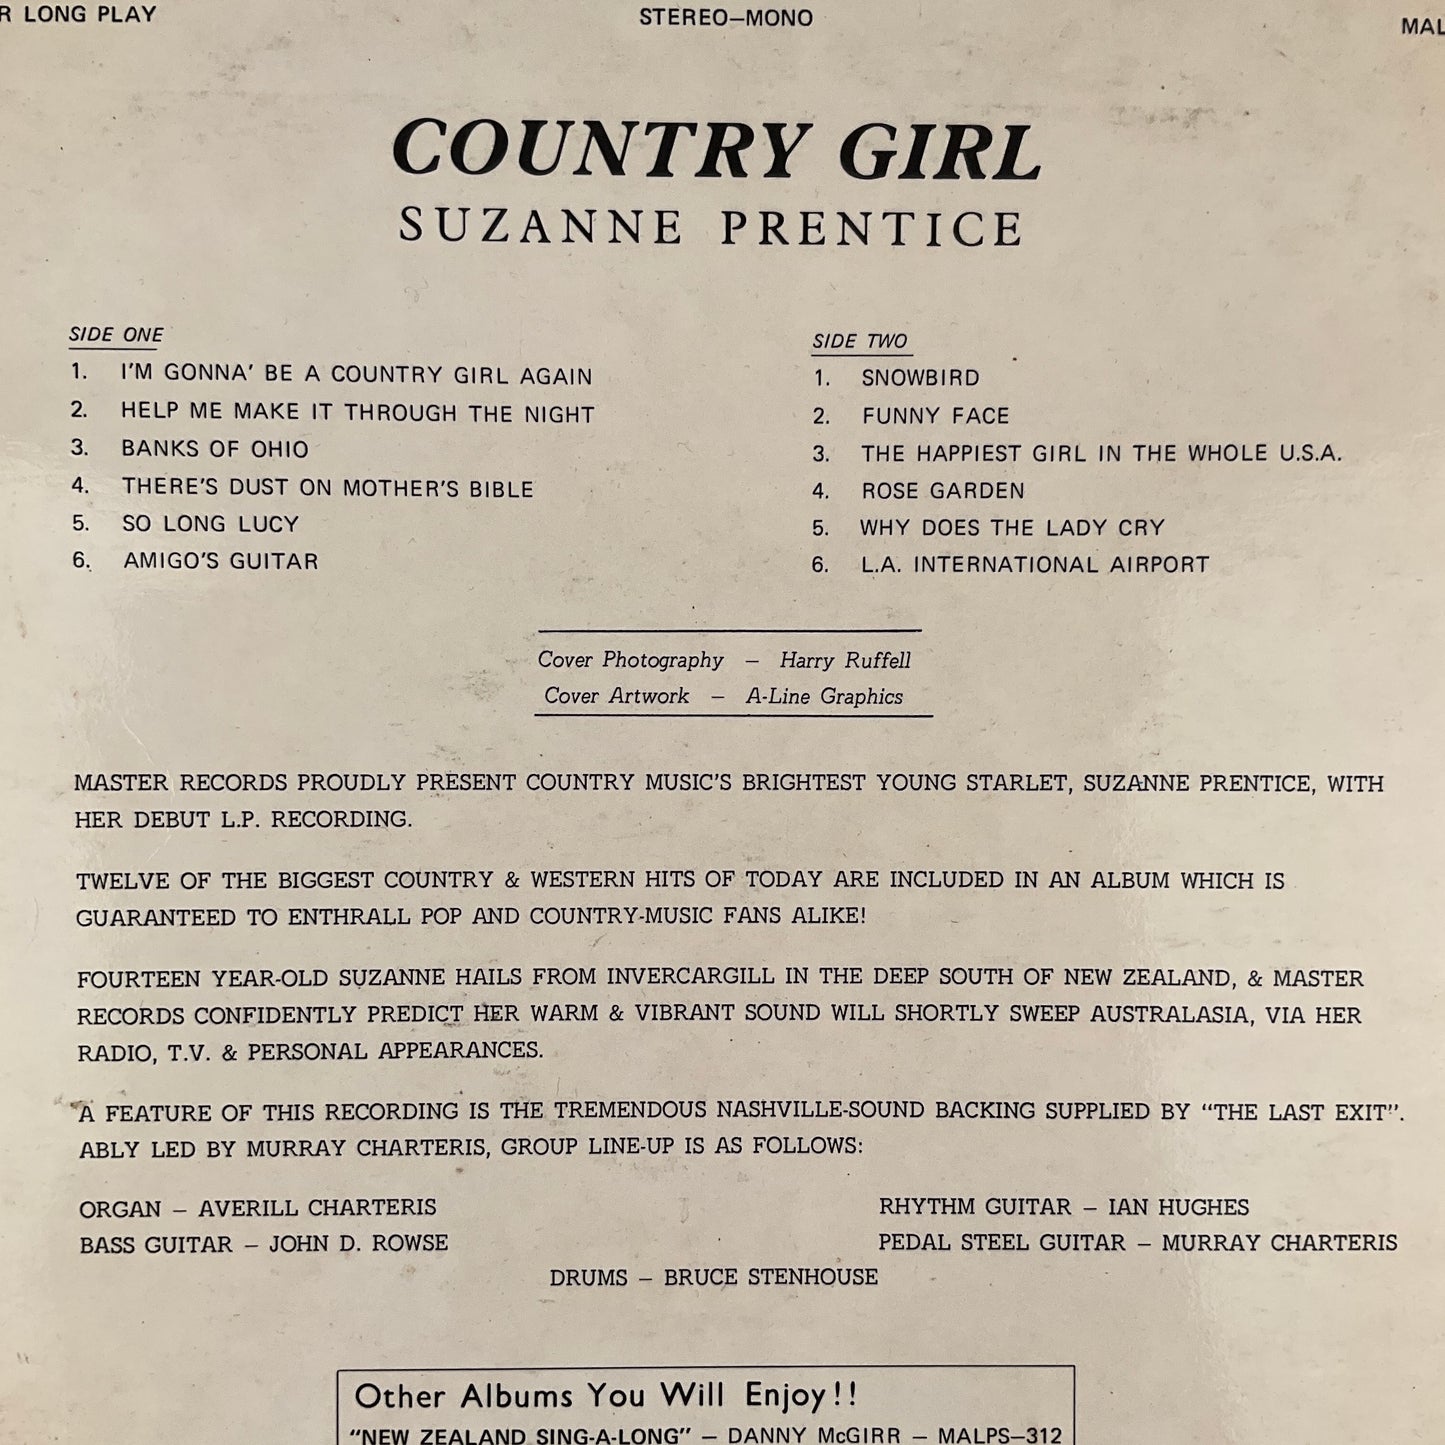 Suzanne Prentice - Country Girl Album